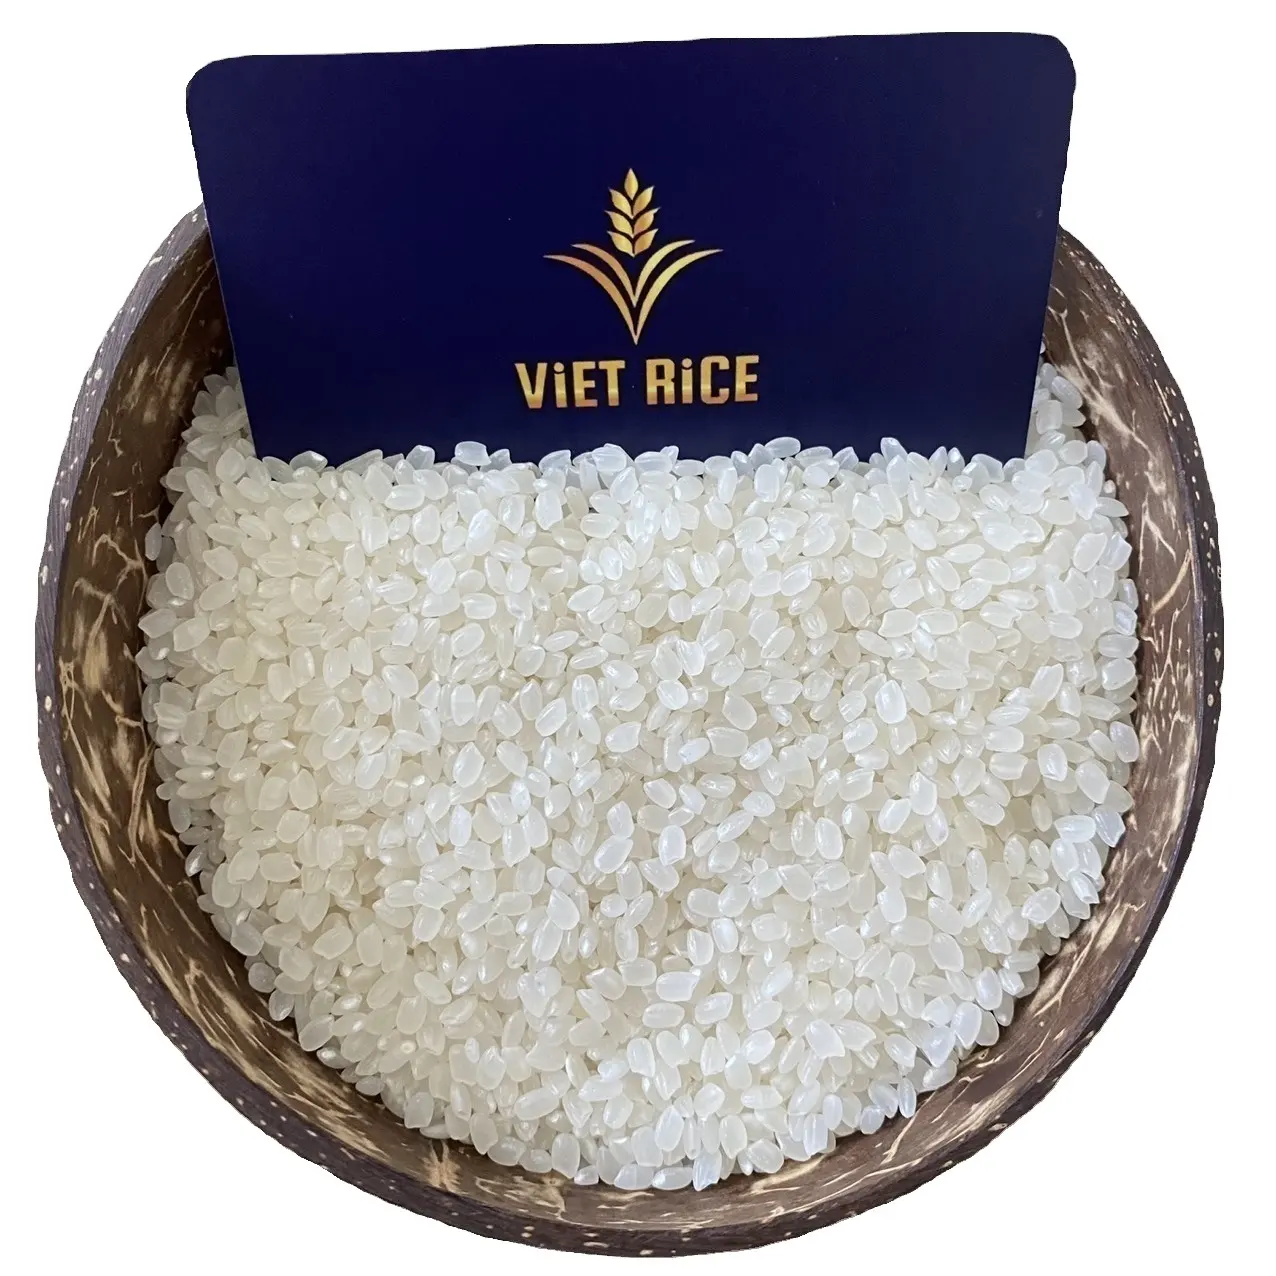 Variedade de arroz japonês do Vietnã - JAPONICA 5% arroz quebrado, o melhor tipo de arroz usado para fazer sushi (Whatsapp +84 769340108)